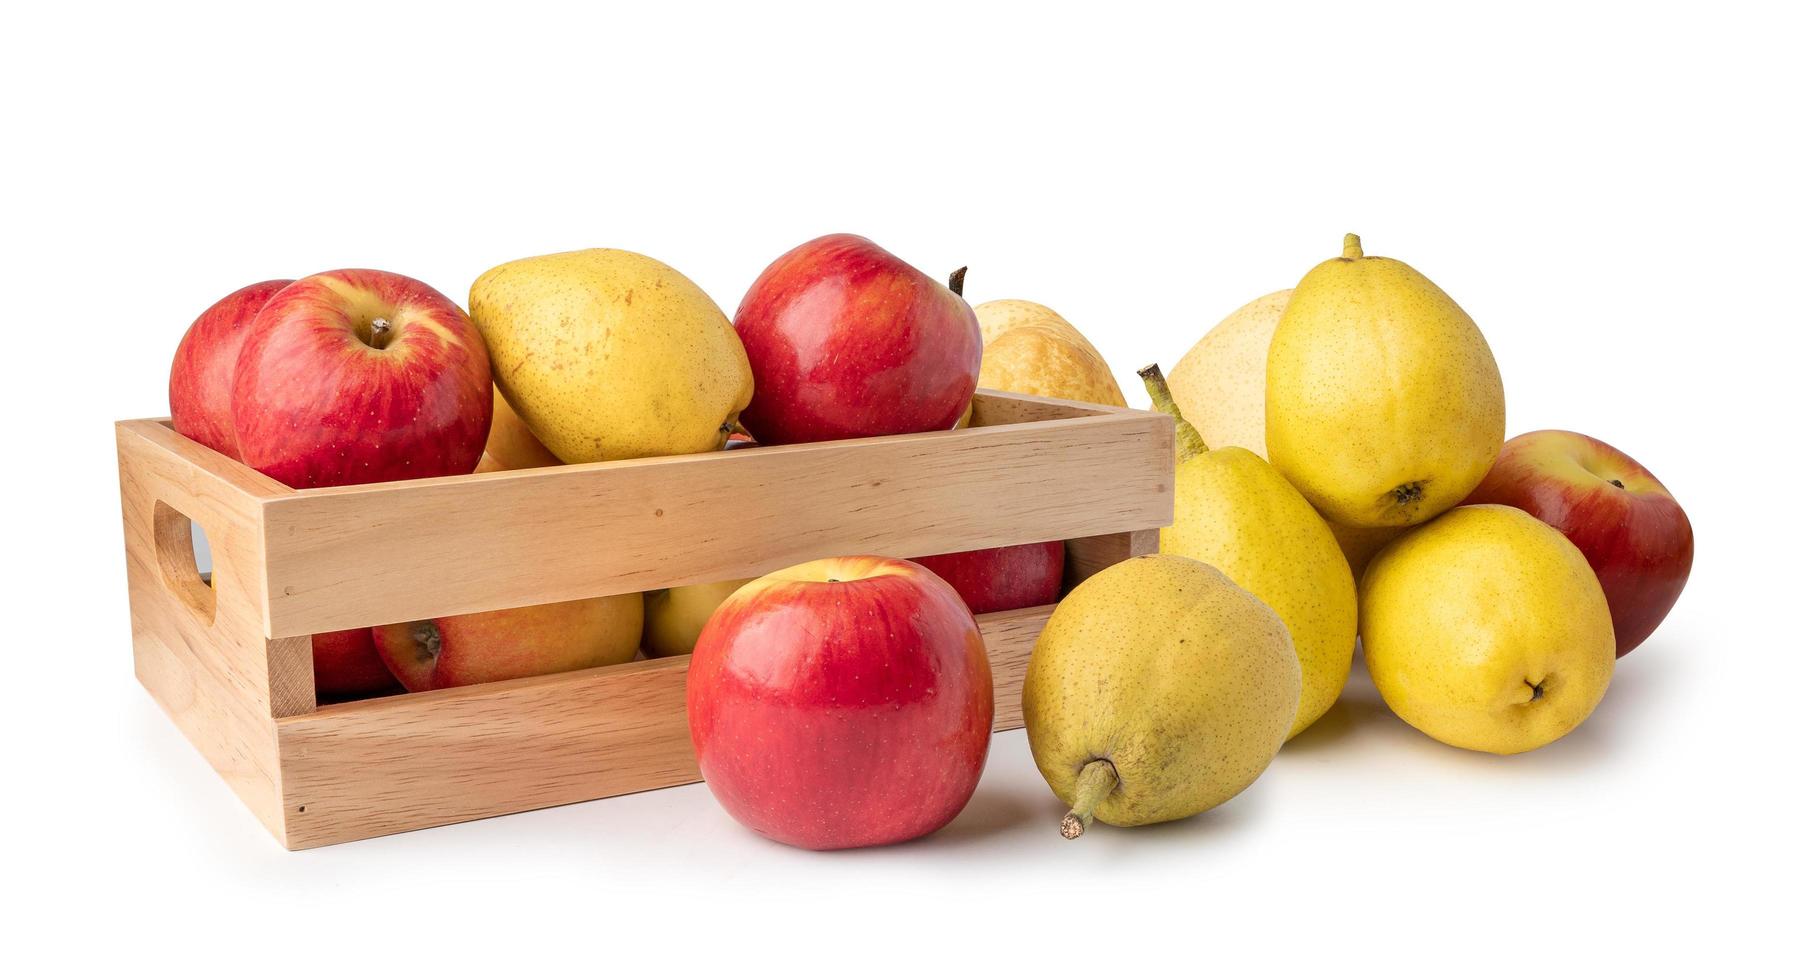 manzana y peras perfumadas fruta en caja de madera aislar sobre fondo blanco. foto